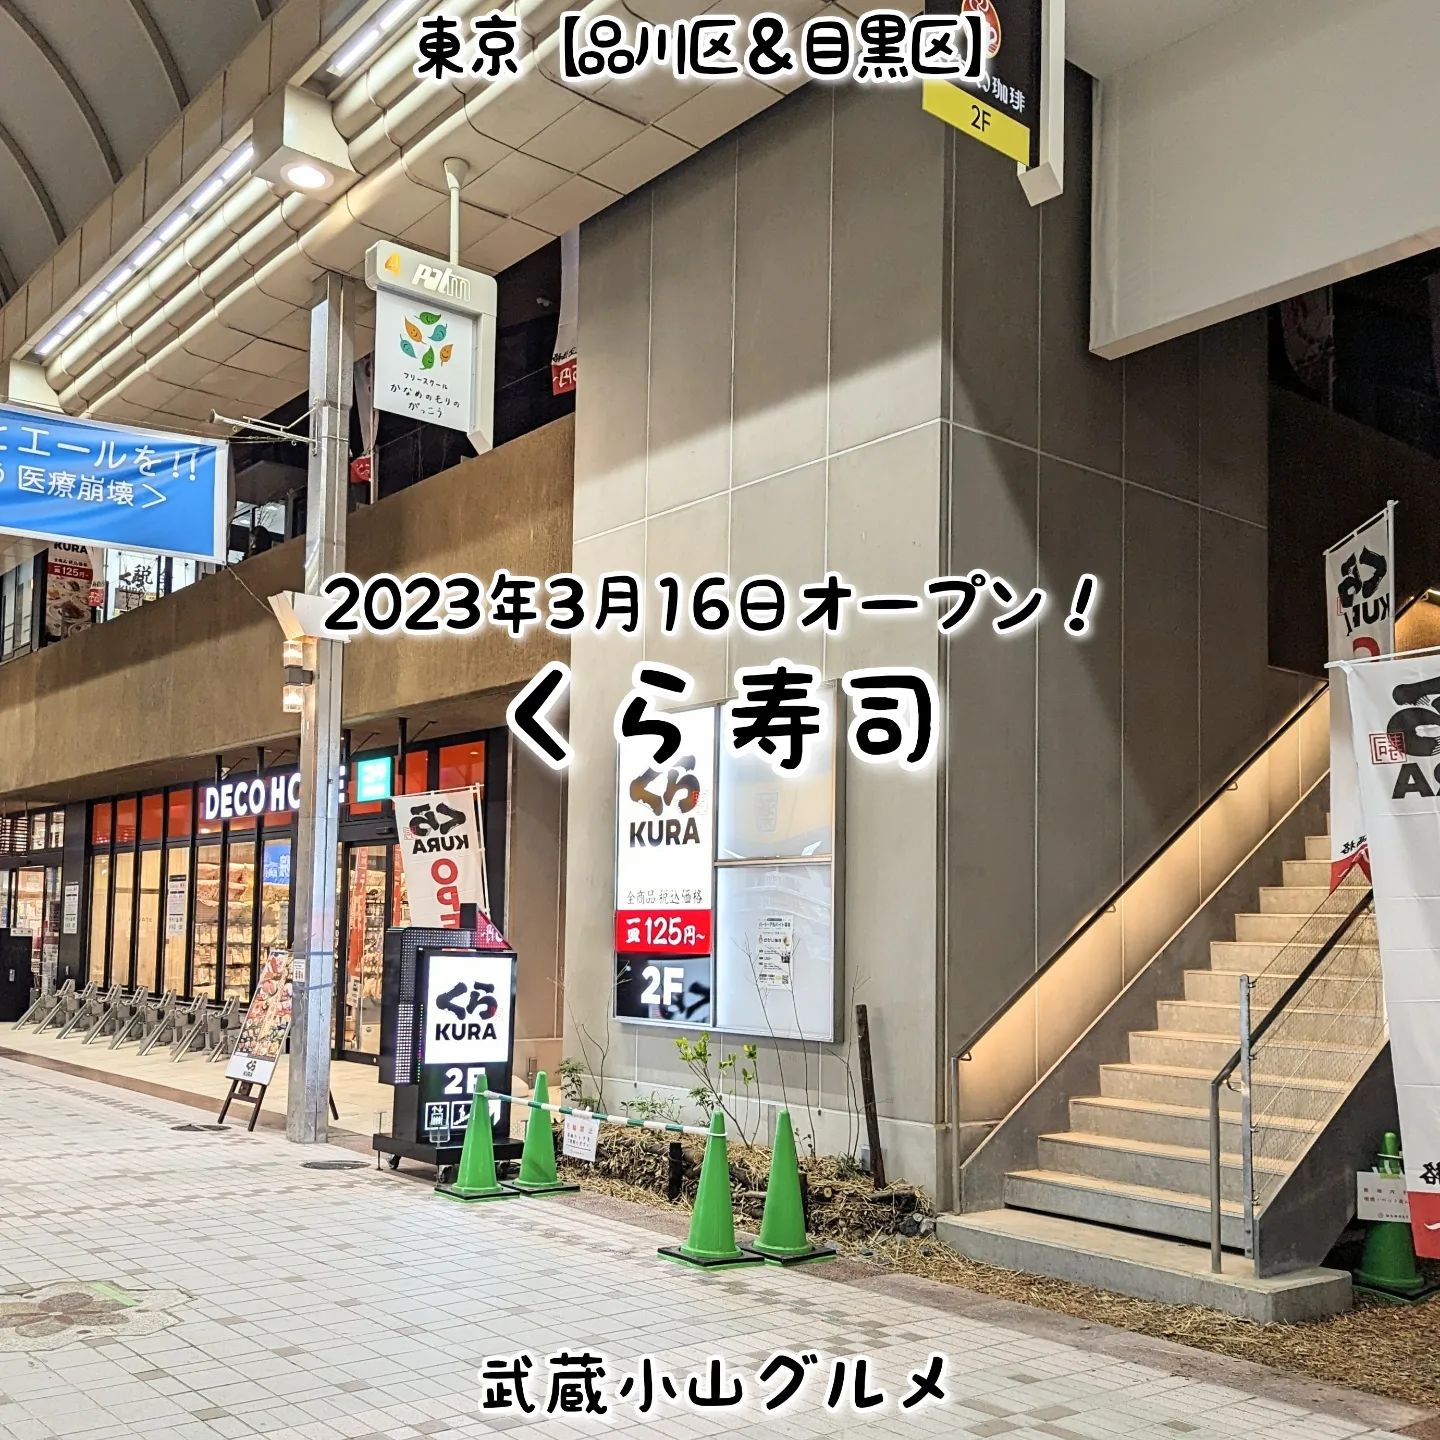 #武蔵小山新店情報「 #くら寿司 」2023年3月16日オープン！ただいま、かにと愛媛県フェア中との事でございますぞ！蟹！場所は、武蔵小山駅からパルム商店を中原街道方面へ進みましてアーケードの終わりが見えてきたら左手側の成城石井の入ってるビルの2階でございます。その昔、東急ストアがあった場所でございますね。【侍猫を応援】「フォロー」＆「いいね」＆「保存」どうぞよろしくお願いします！【侍猫をもっと応援】メインサイトもいろいろ見ていただくと侍猫がさらに元気になって武蔵小山グルメをもっと食べ歩けるようになります！（お店の地図＆追加画像あり！）→ https://musashikoyama.samuraicat.jp/ → @musashikoyama.news ※メインサイトへの移動はプロフィールのURLが簡単！【侍猫に連絡】気になるお店やおすすめの新メニュー情報などお気軽にDMください！気まぐれに投稿いたします！もちろんお仕事の依頼も受付中でございます。#武蔵小山 #武蔵小山情報 #武蔵小山ランチ #武蔵小山商店街  #武蔵小山グルメ #武蔵小山カフェ #西小山 #戸越銀座 #不動前 #碑文谷 #戸越 #中延  #荏原中延 #目黒本町 #品川 #品川区 #品川グルメ #目黒 #目黒区 #目黒グルメ #東京 #東京グルメ #新店 #新店オープン #武蔵小山新店 #武蔵小山オープン #武蔵小山寿司 #寿司